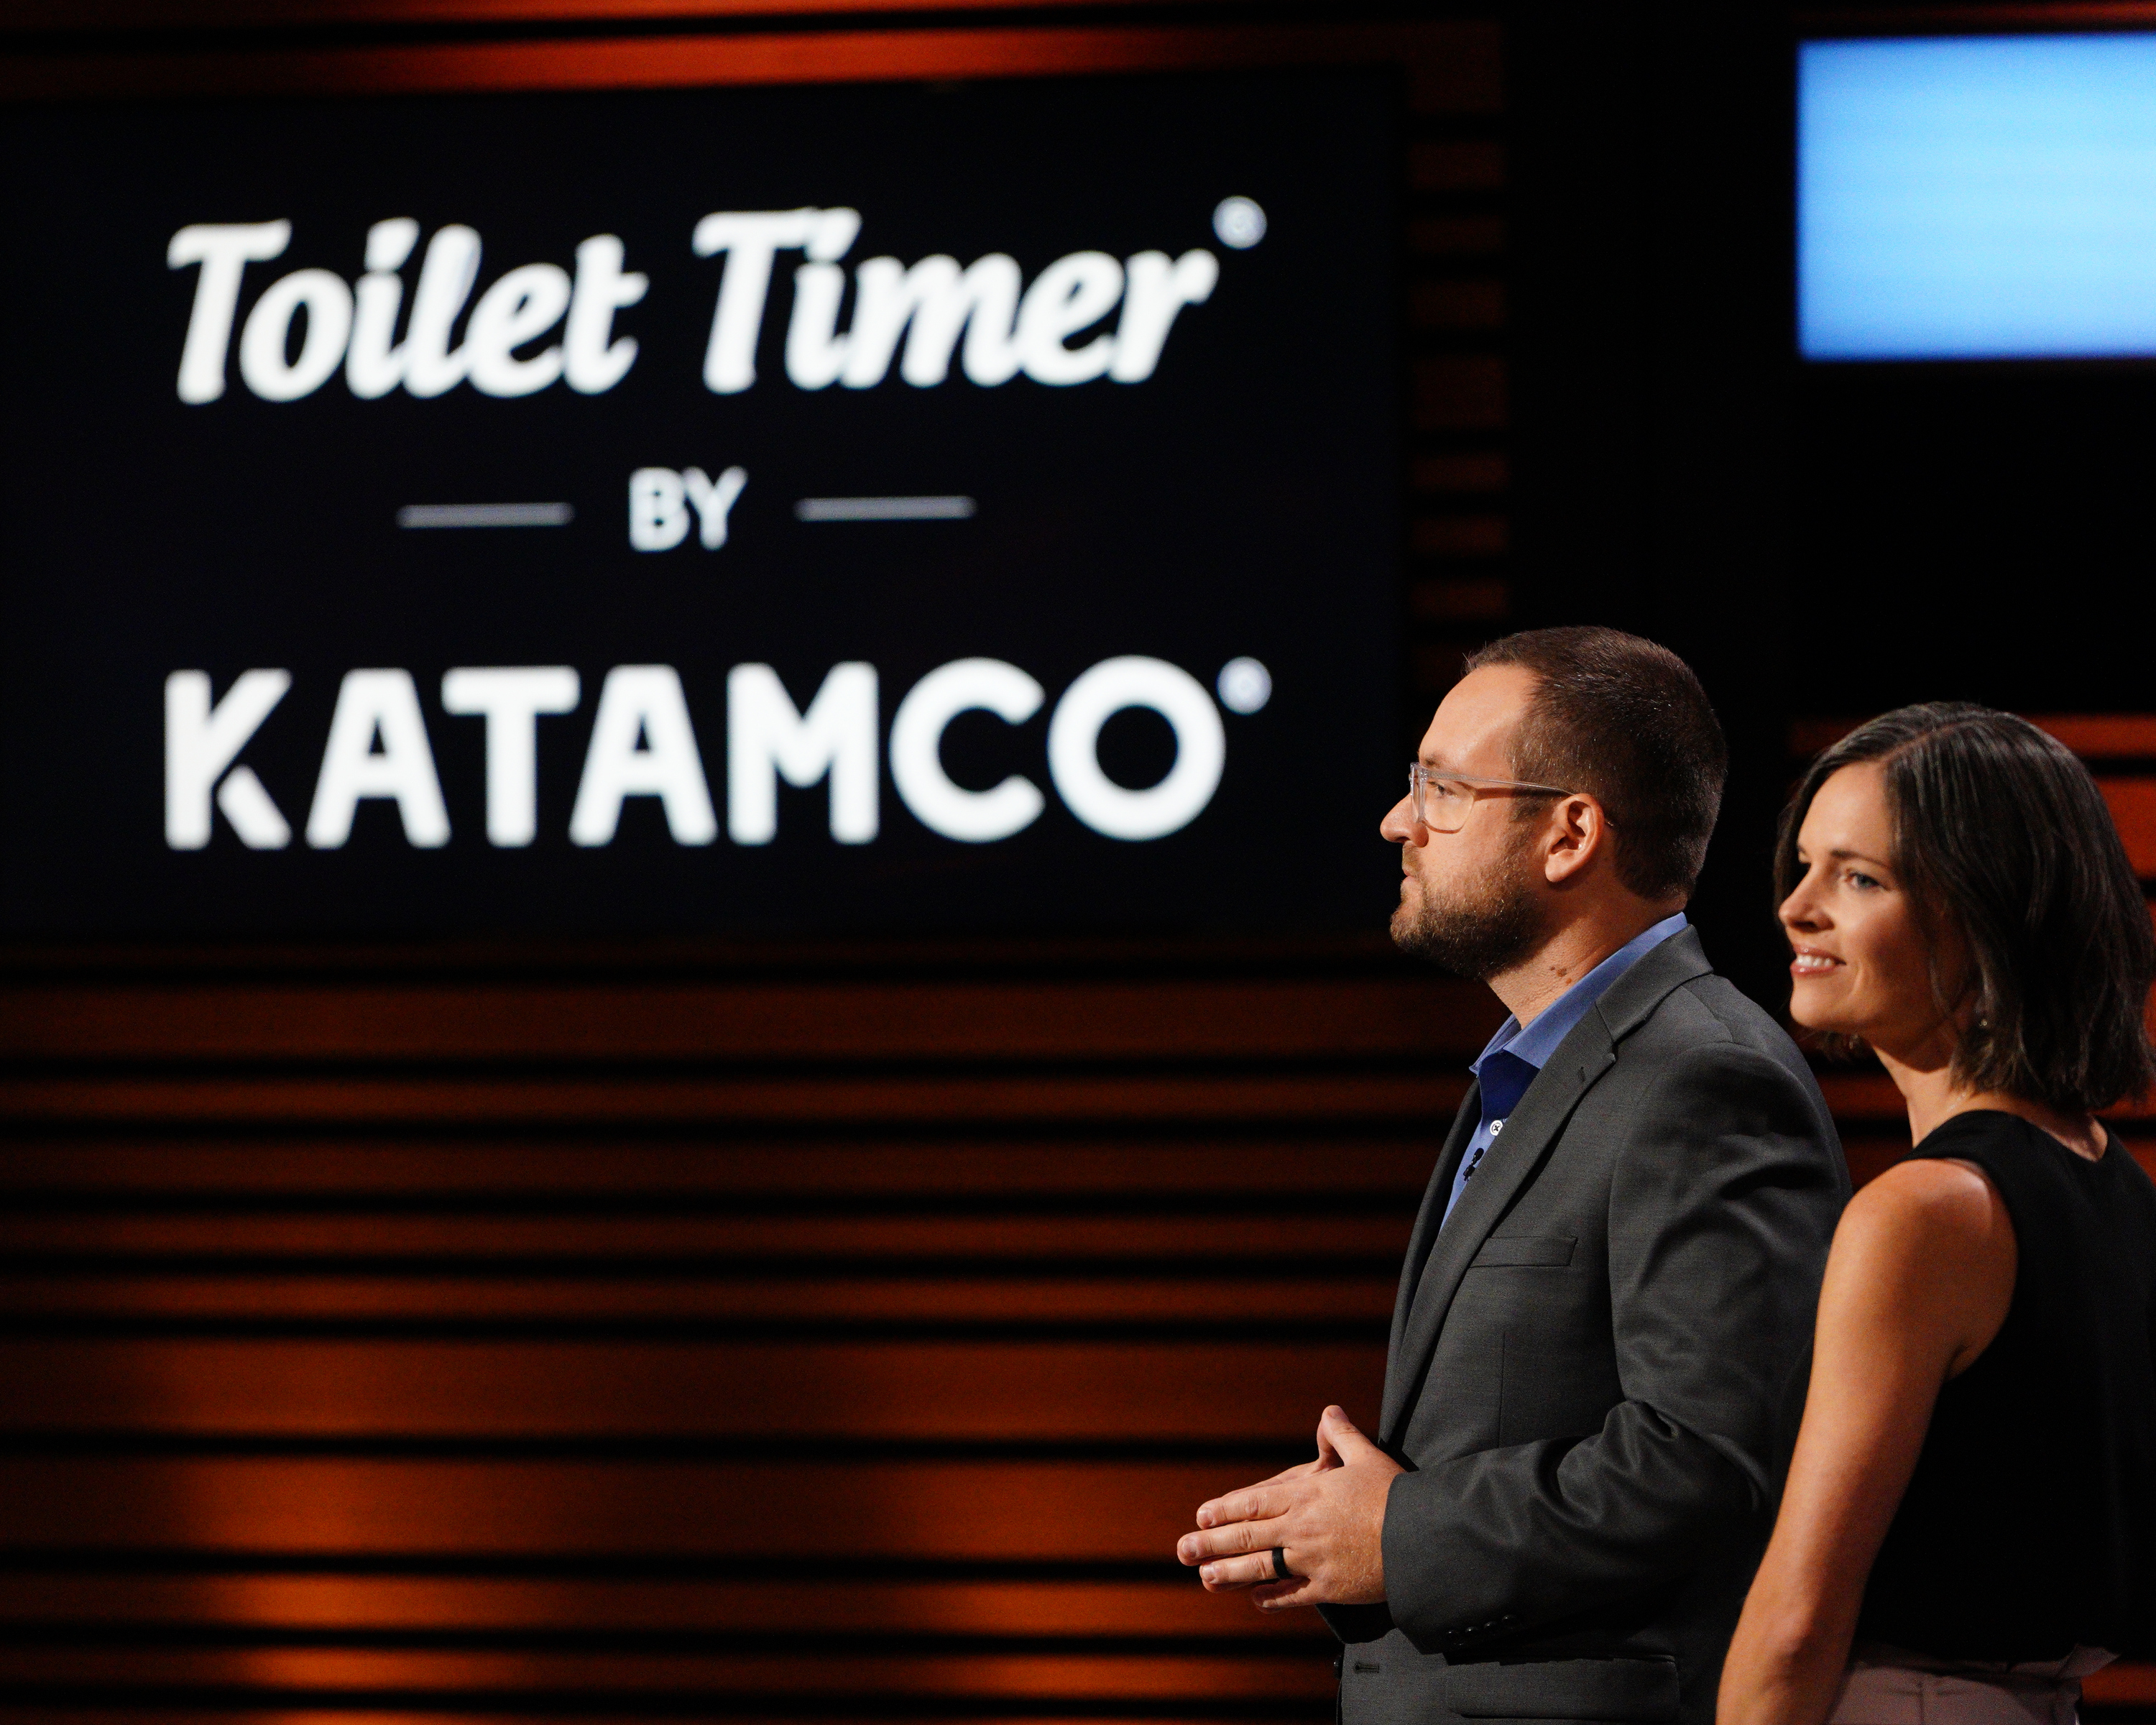 Katamco, home of the Toilet Timer® (@katamco) / X